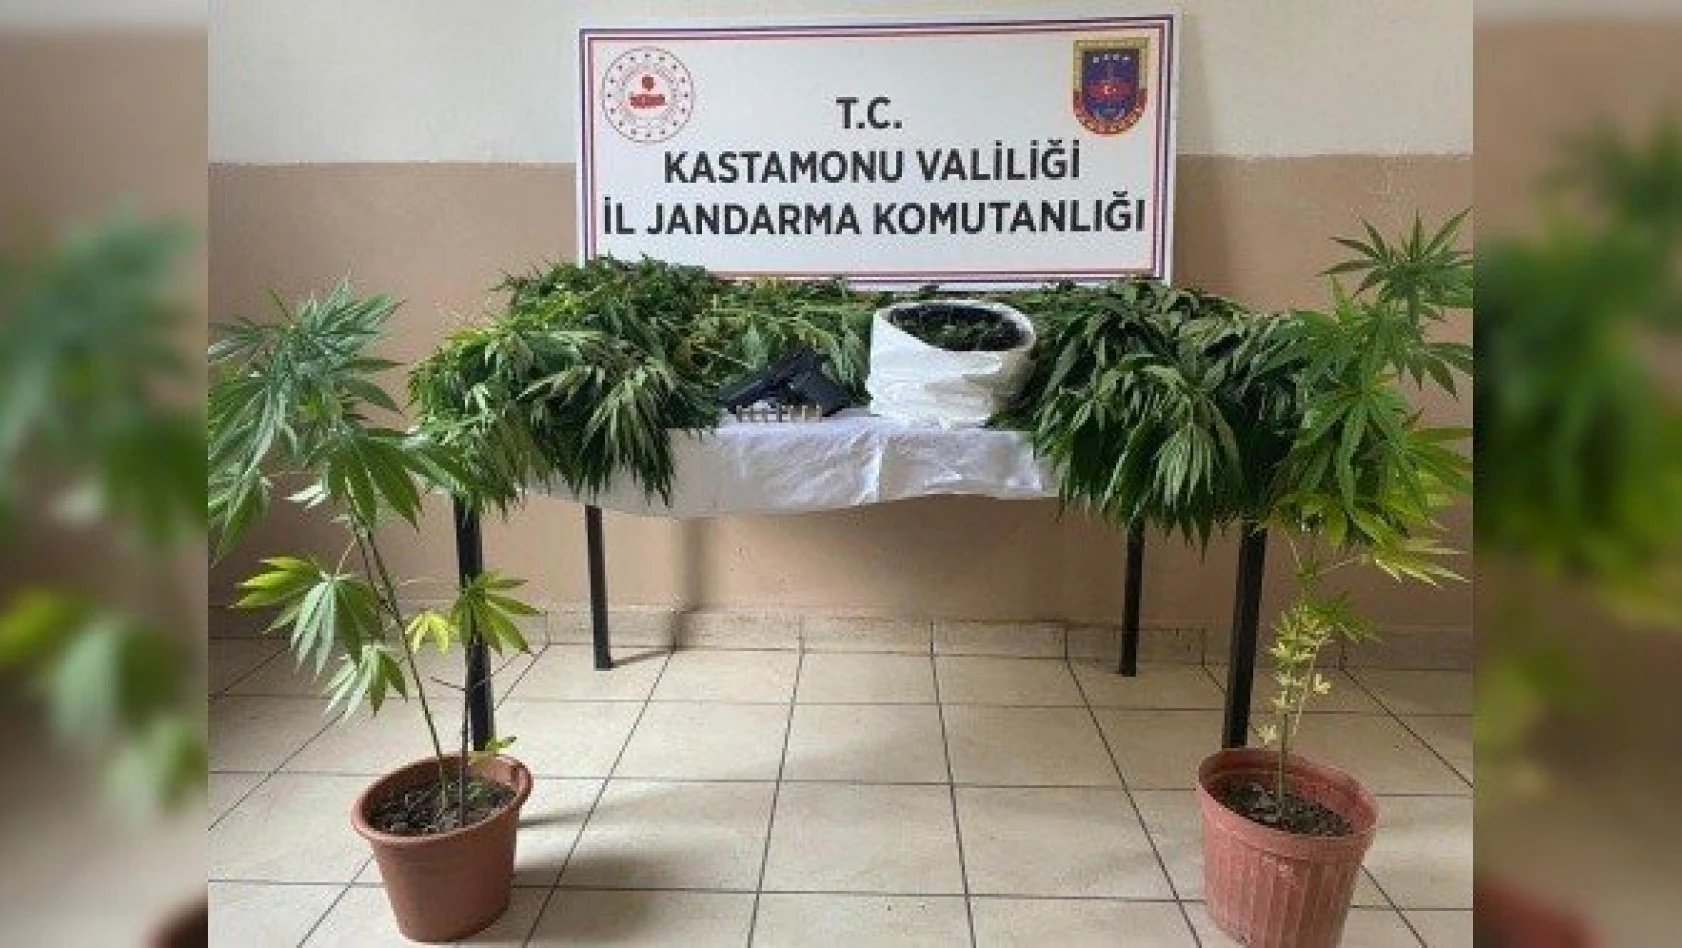 Kastamonu'daki uyuşturucu operasyonlarında 3 kişi yakalandı